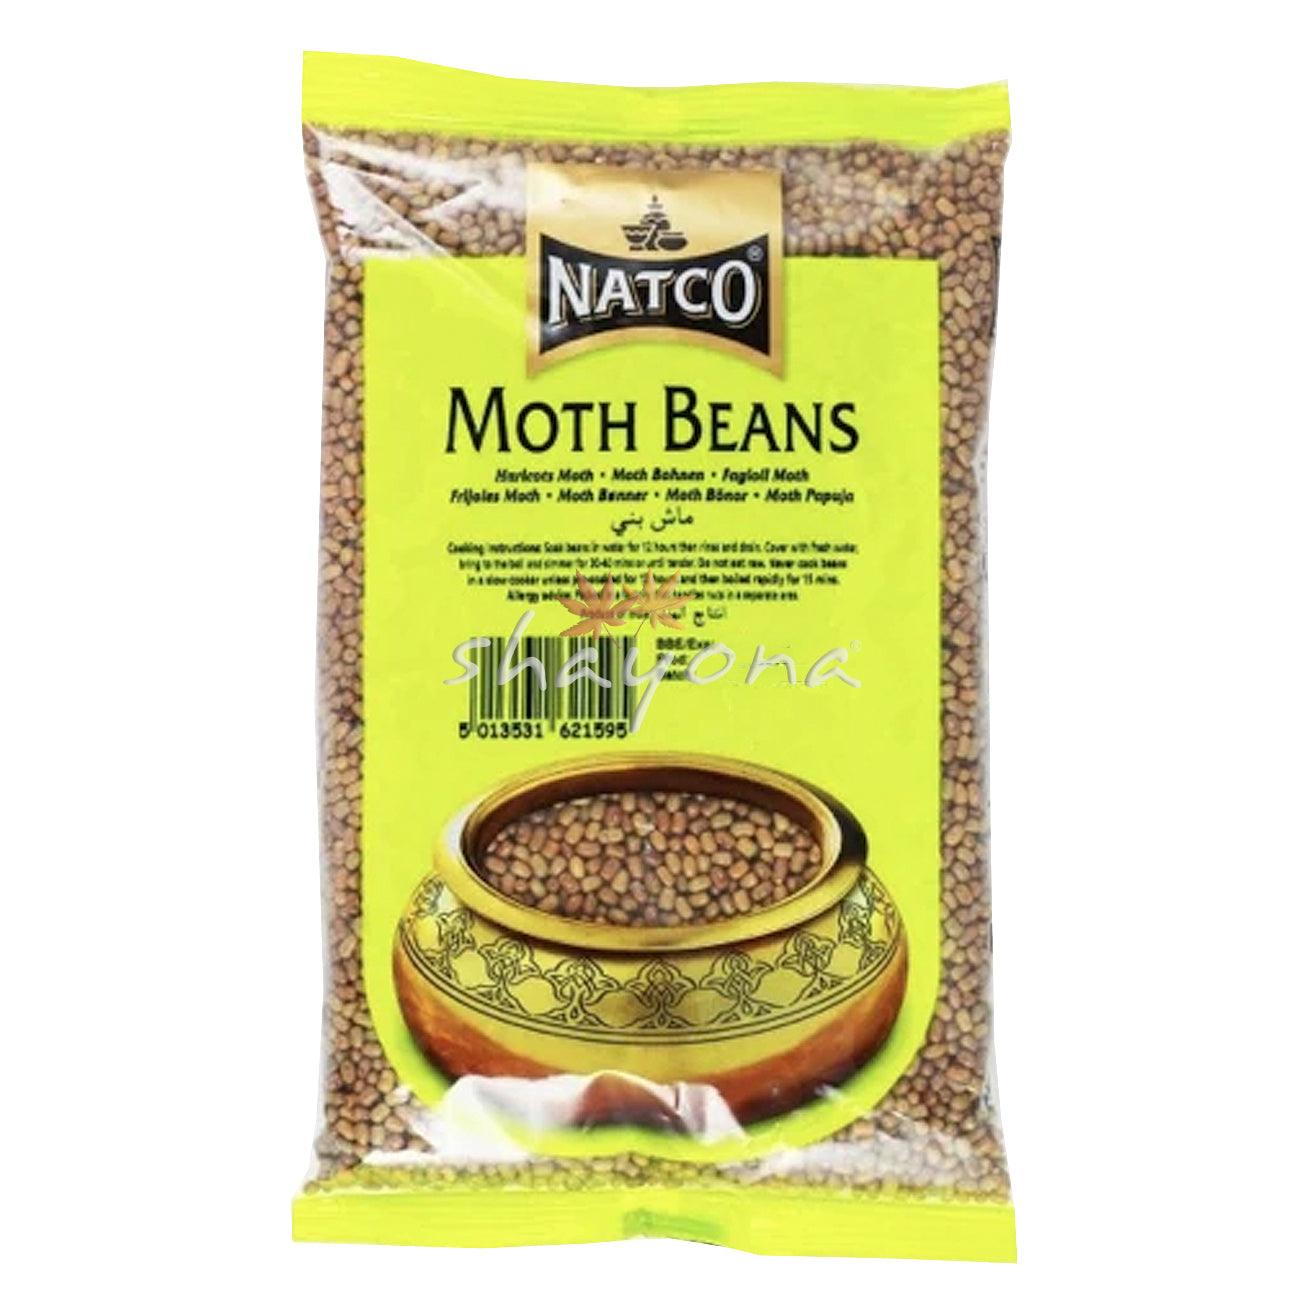 Natco Moth Beans - Shayona UK